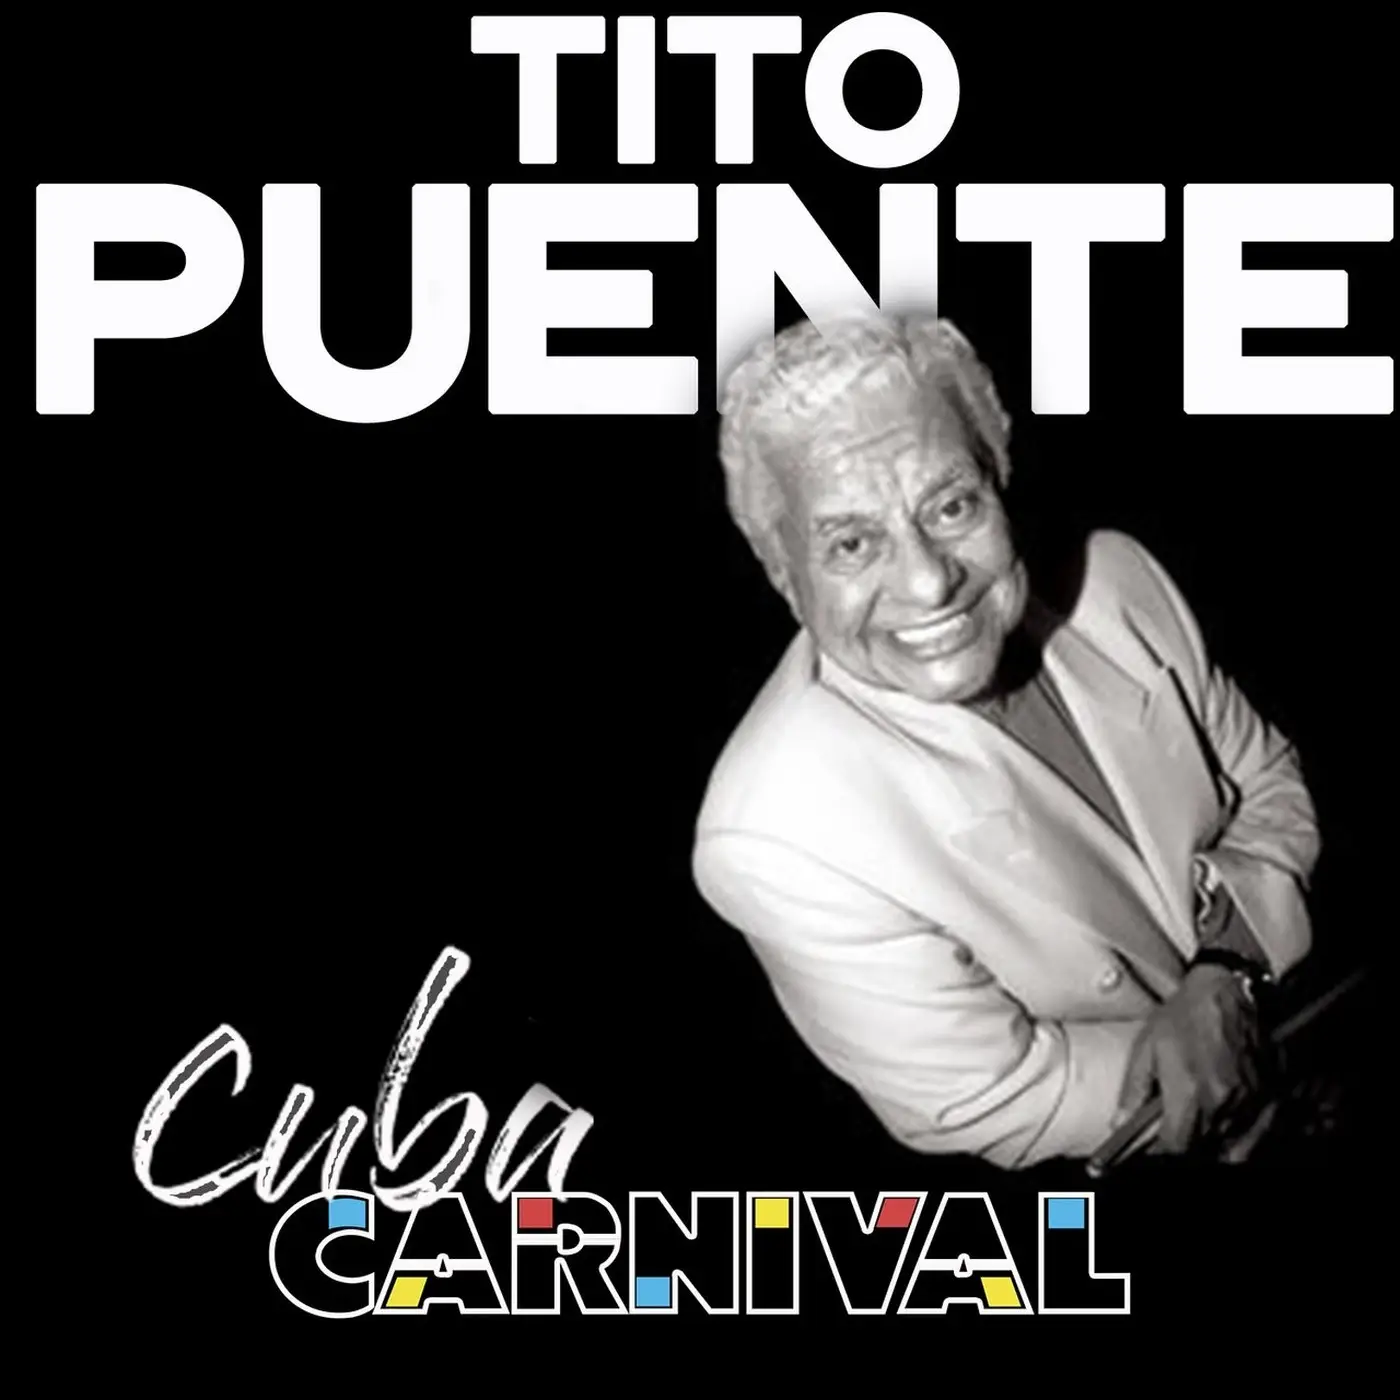 Tito Puente Cuba Carnival 1956 2019 Avaxhome